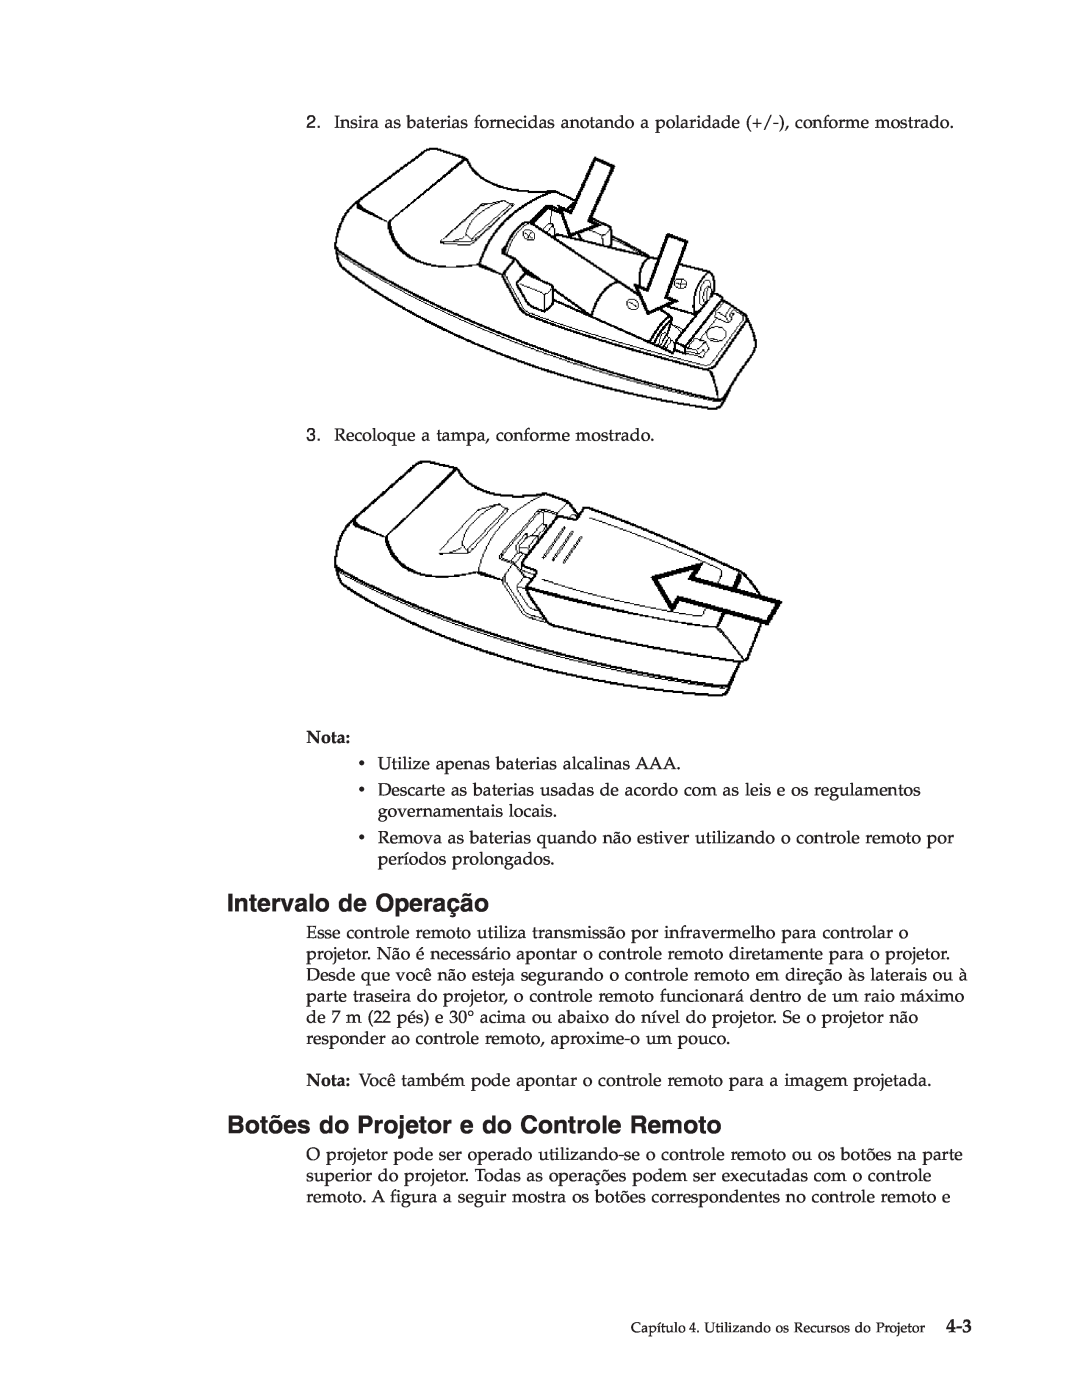 IBM M400 manual Intervalo de Operação, Botões do Projetor e do Controle Remoto, Nota 